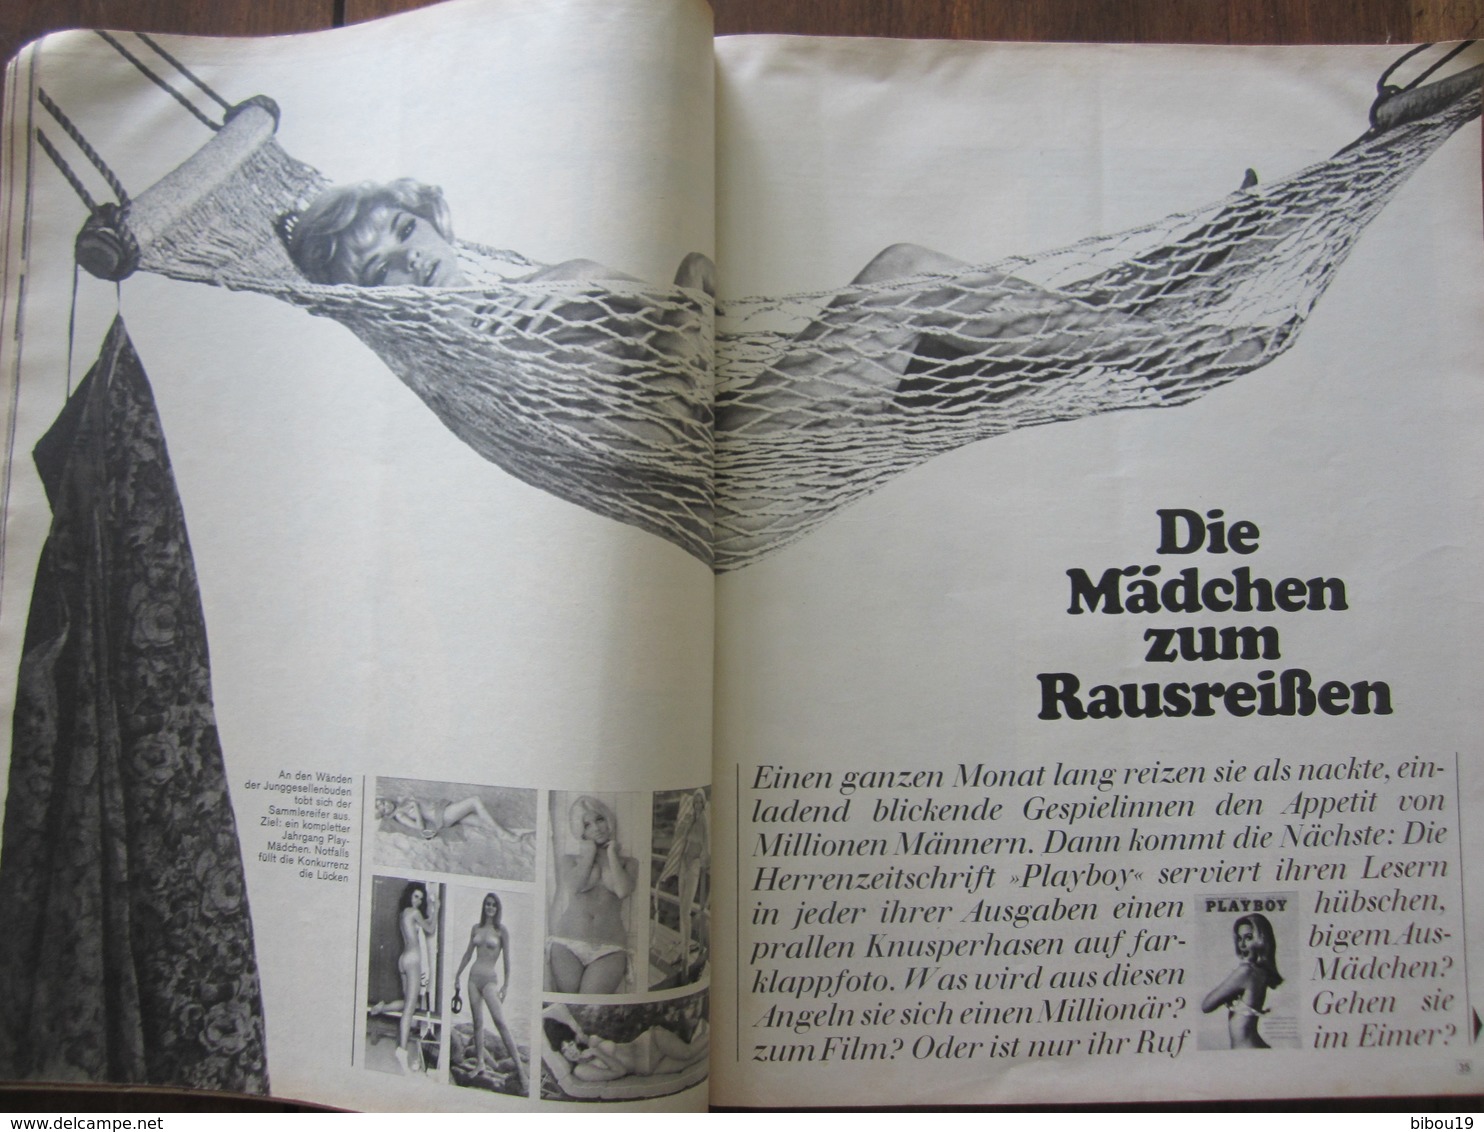 MAGAZINE STERN APRIL 1968   N 17 IST DIE REVOLUTION NOCH ZU STOPPEN? - Reise & Fun